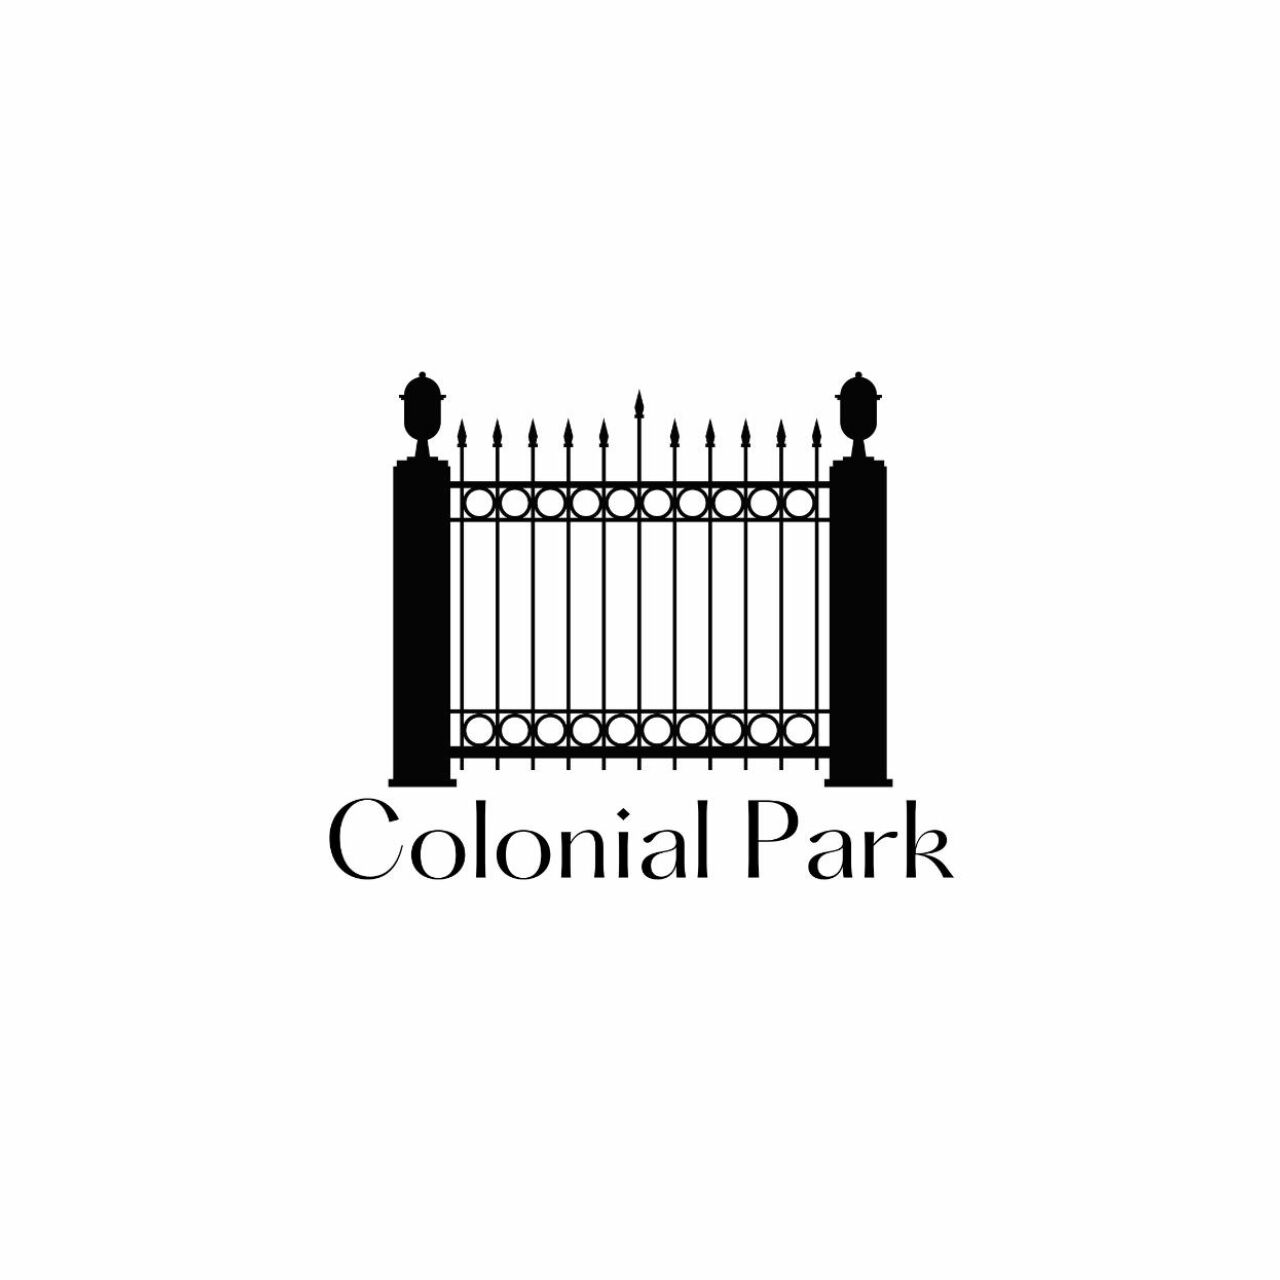 Colonialpark Finalv2 Padded 2